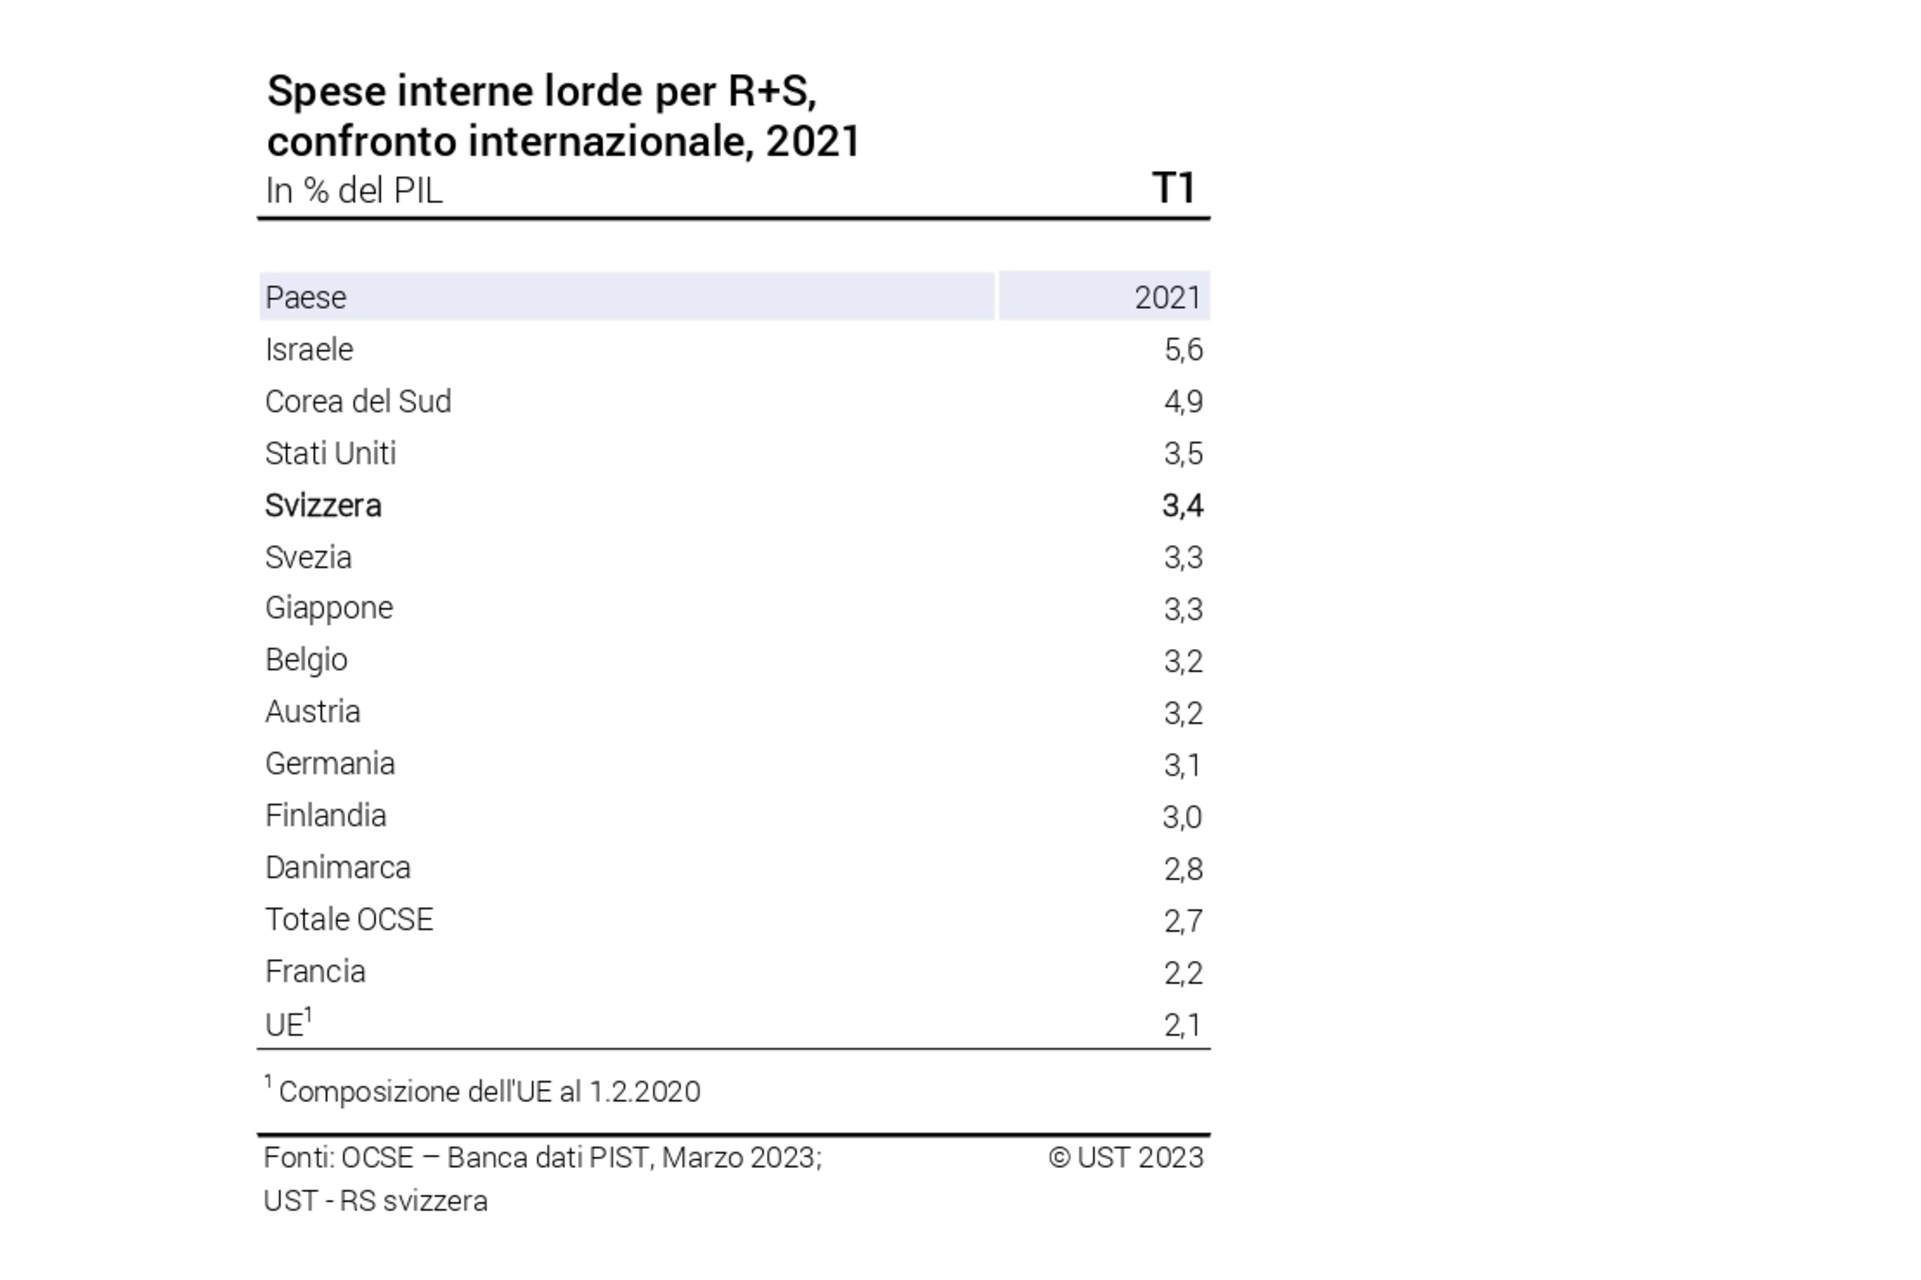 Ricerca svizzera: spese interne lorde per R+S, confronto internazionale, 2021